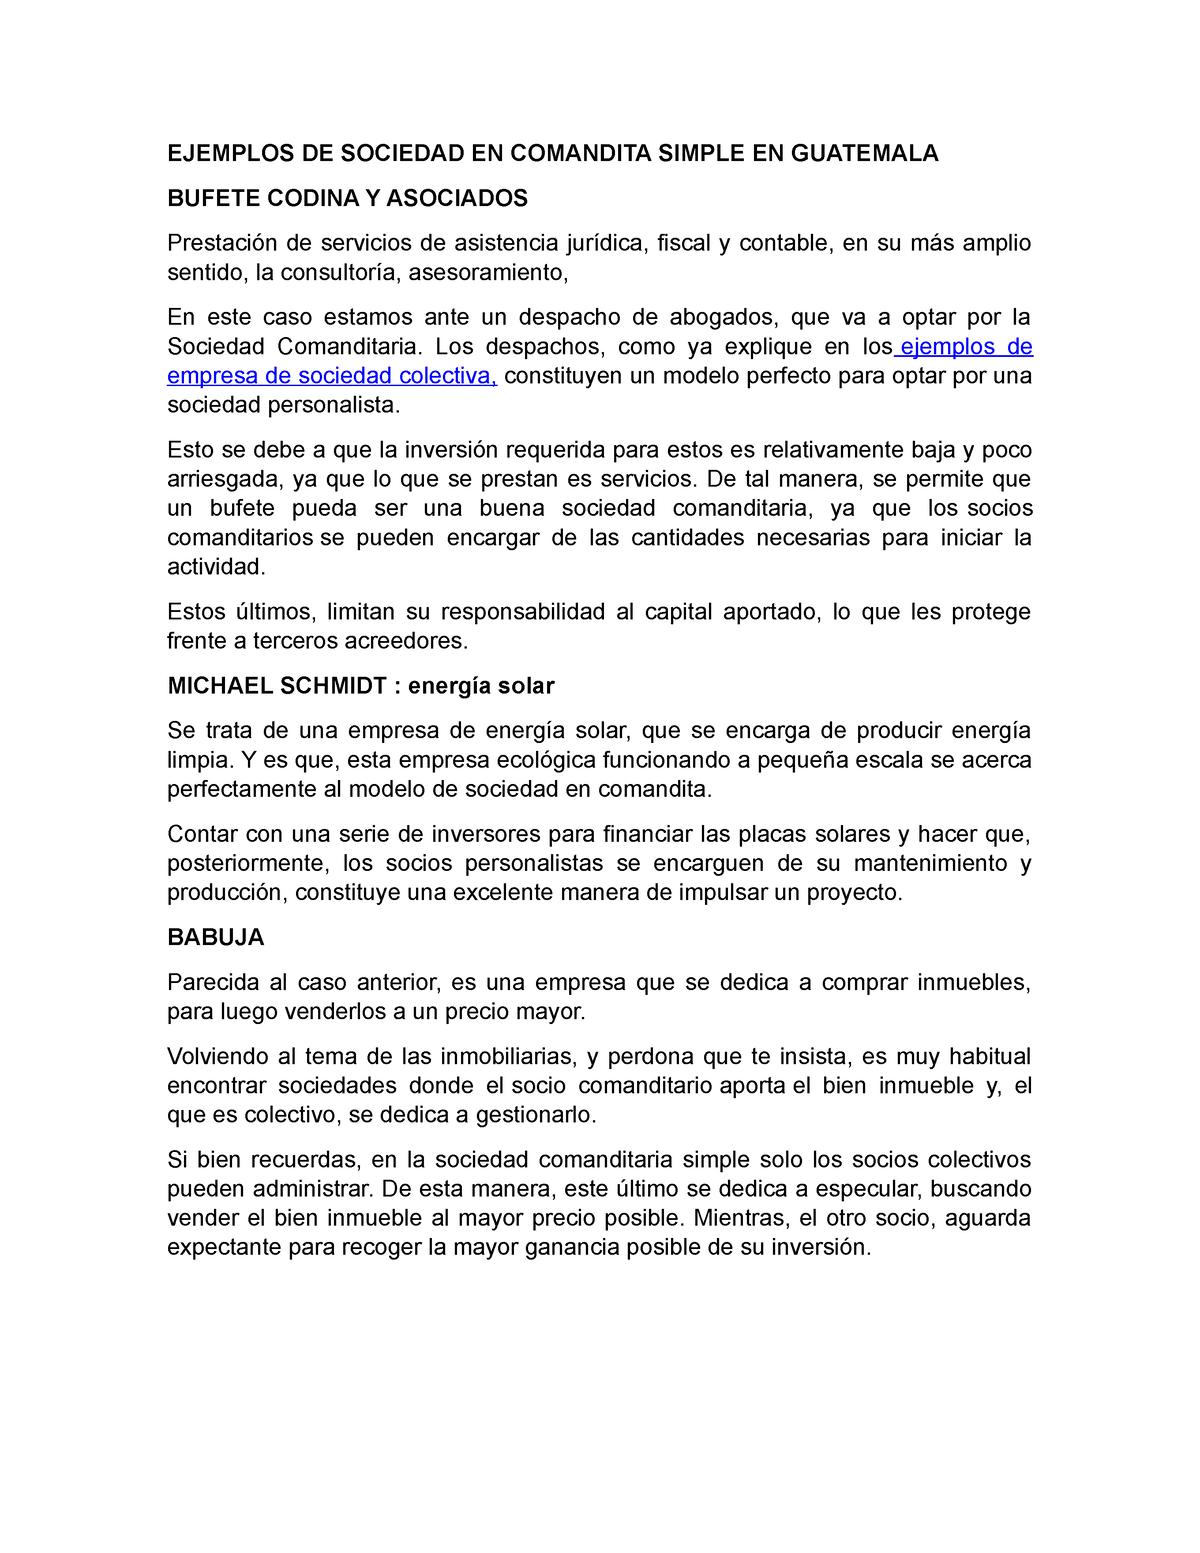 Documento único normas - EJEMPLOS DE SOCIEDAD EN COMANDITA SIMPLE EN  GUATEMALA BUFETE CODINA Y - Studocu